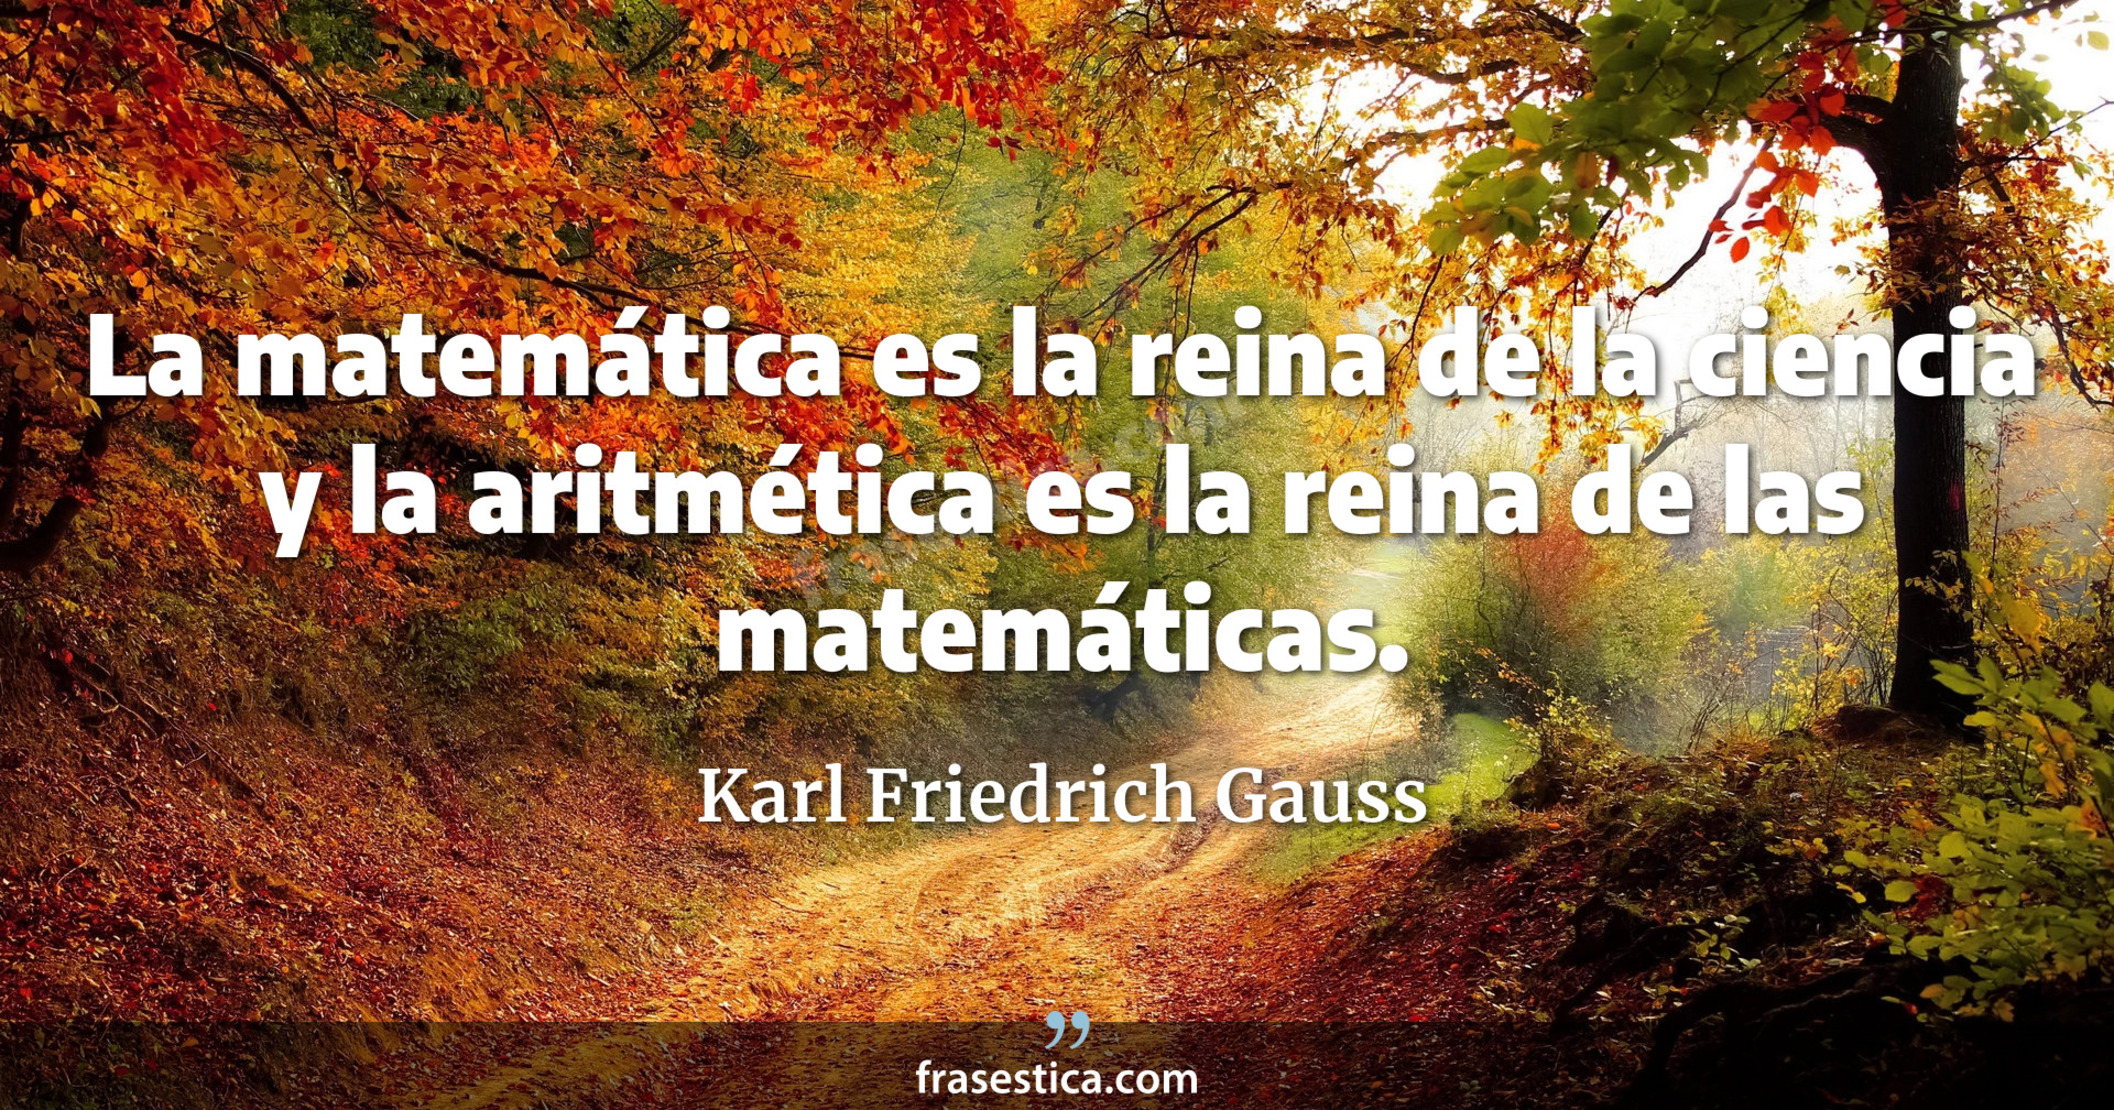 La matemática es la reina de la ciencia y la aritmética es la reina de las matemáticas. - Karl Friedrich Gauss